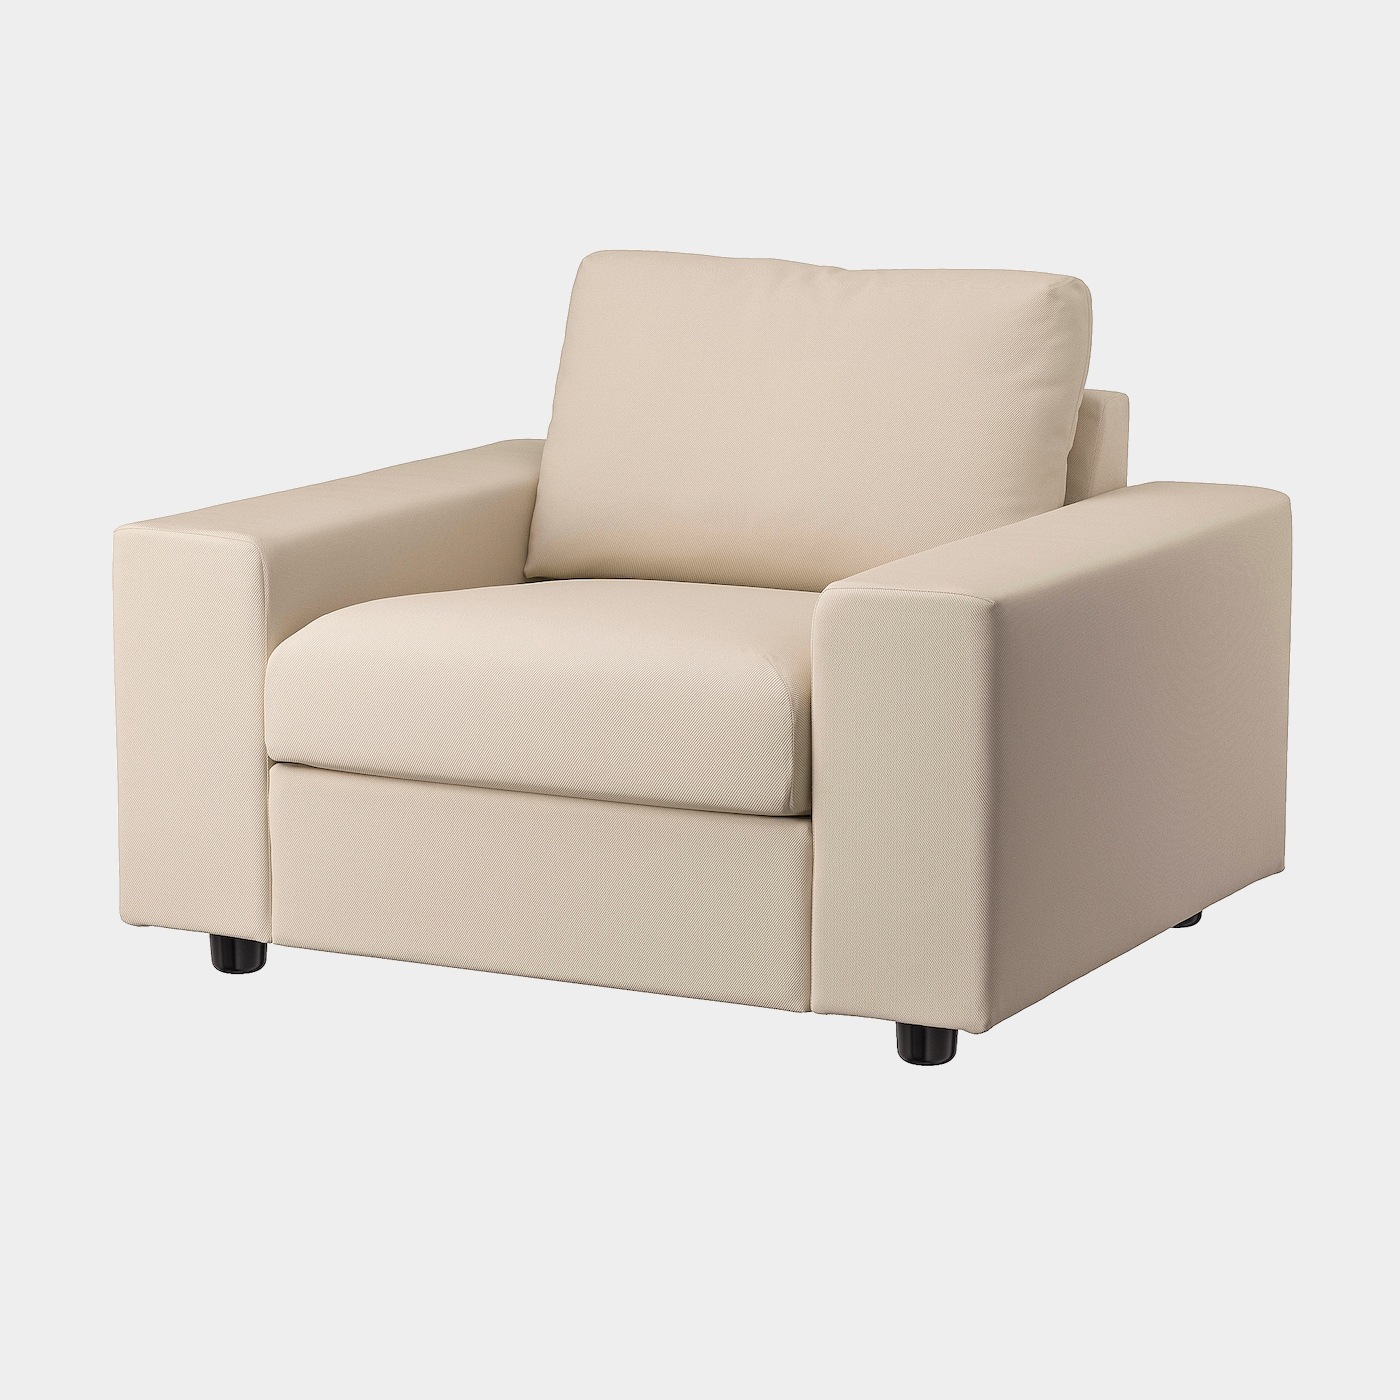 VIMLE Sessel  -  - Möbel Ideen für dein Zuhause von Home Trends. Möbel Trends von Social Media Influencer für dein Skandi Zuhause.